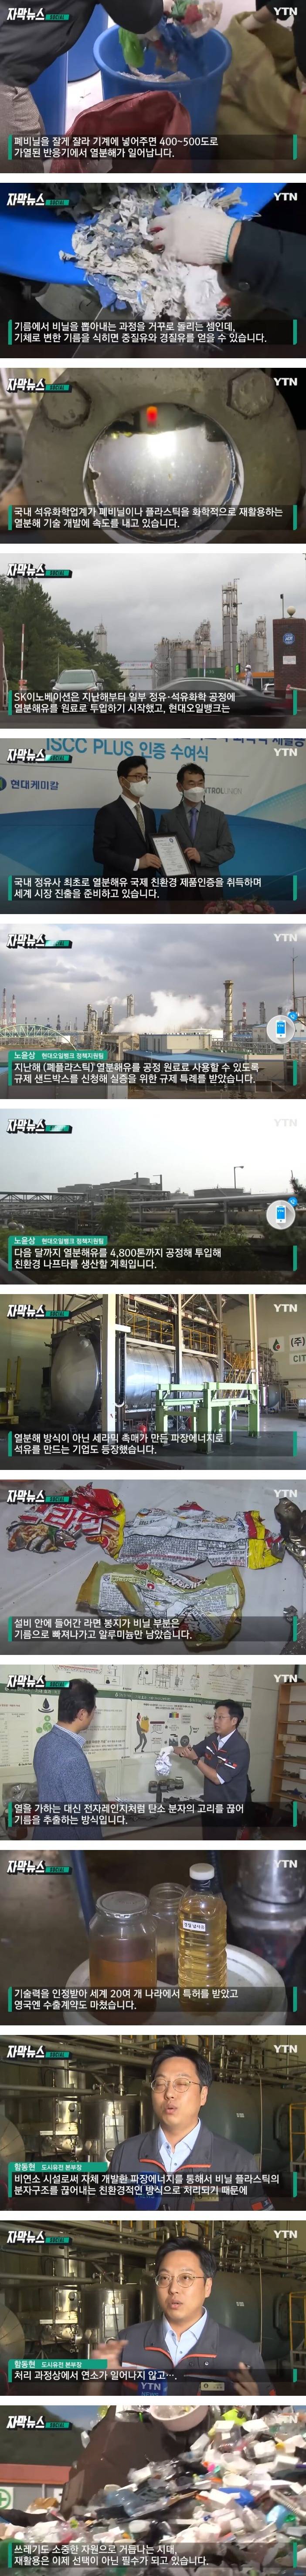 [유머] 기름 뽑아내는 기술 만들었다던 한국 기업 -  와이드섬